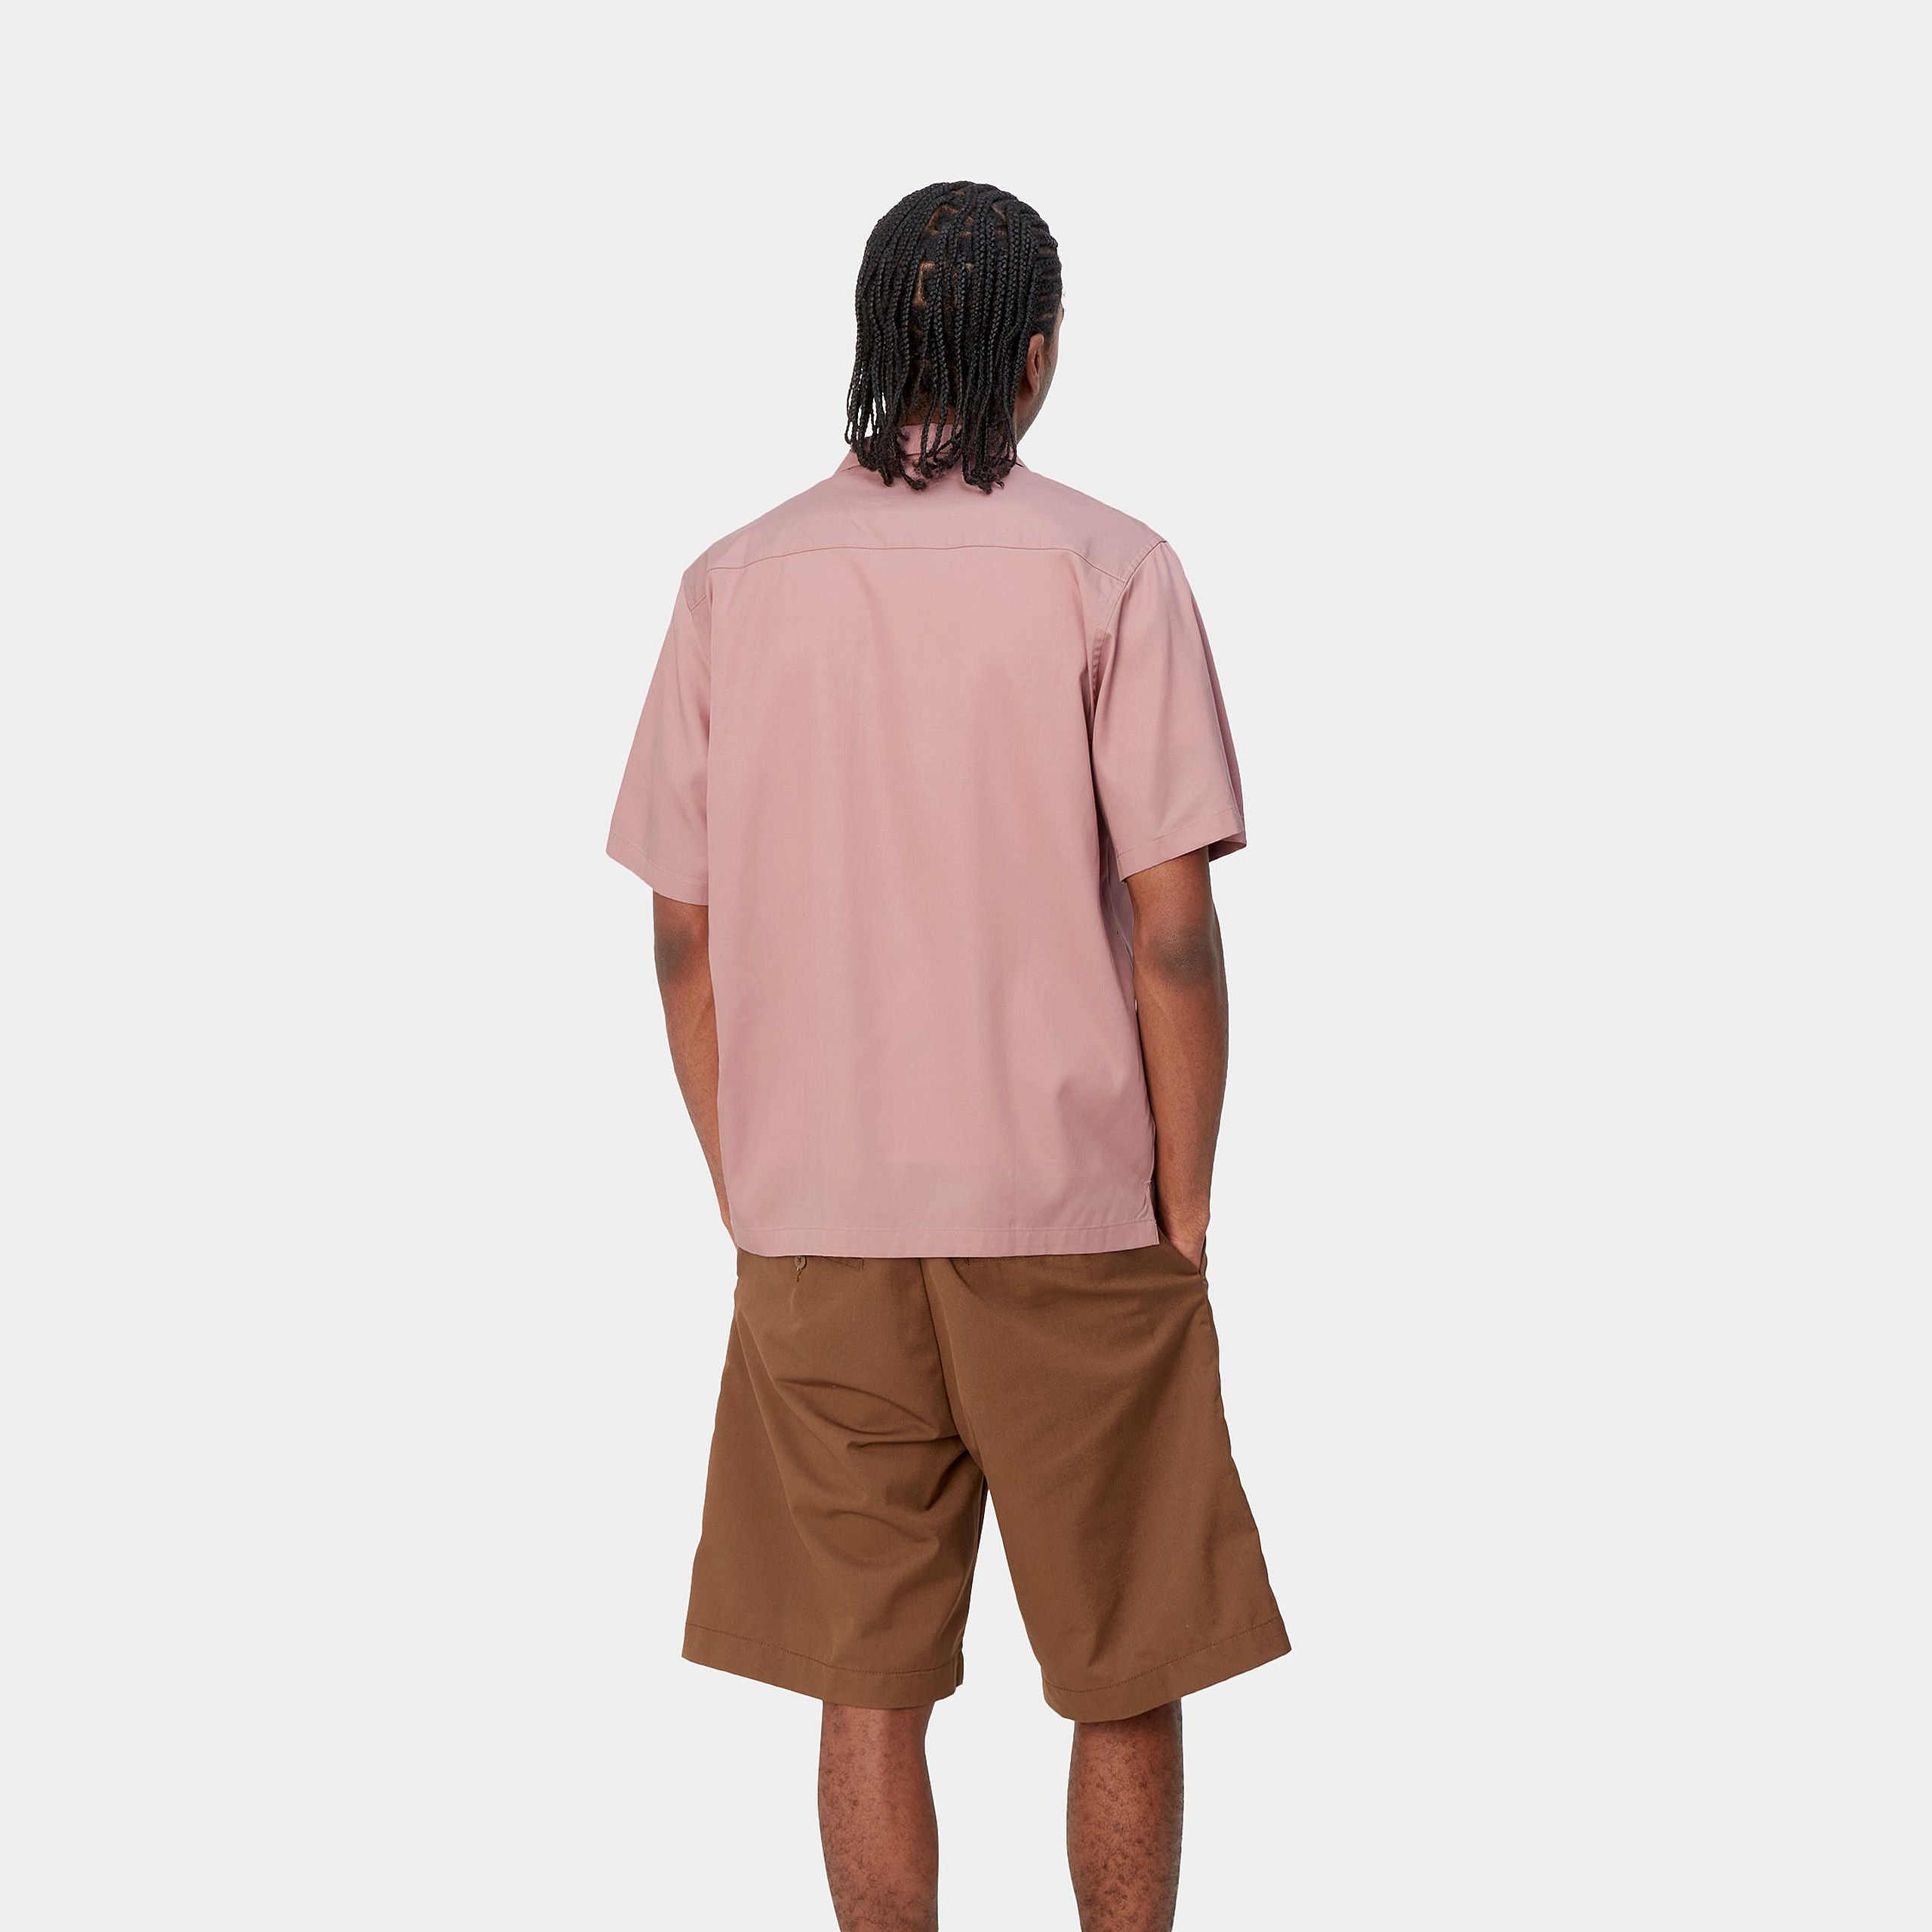 s-s-delray-shirt-glassy-pink-black-1697_png_67510498-104b-46f8-9cfe-87708ec8b9a8.jpg